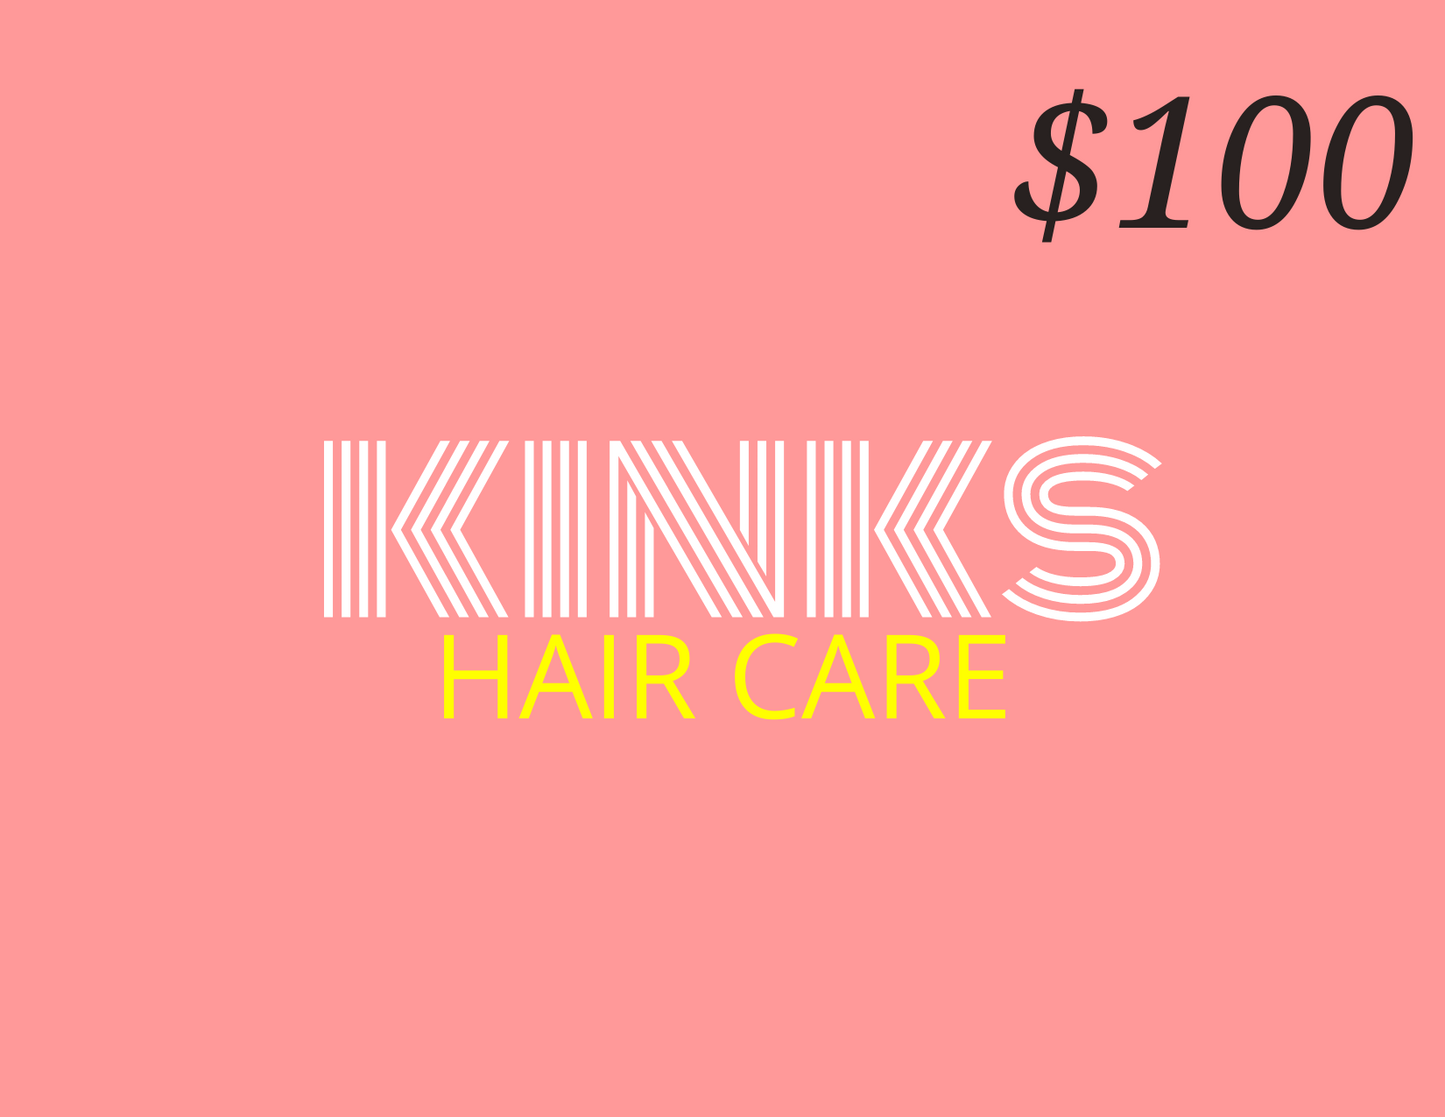 Kinks Hair Care gift card